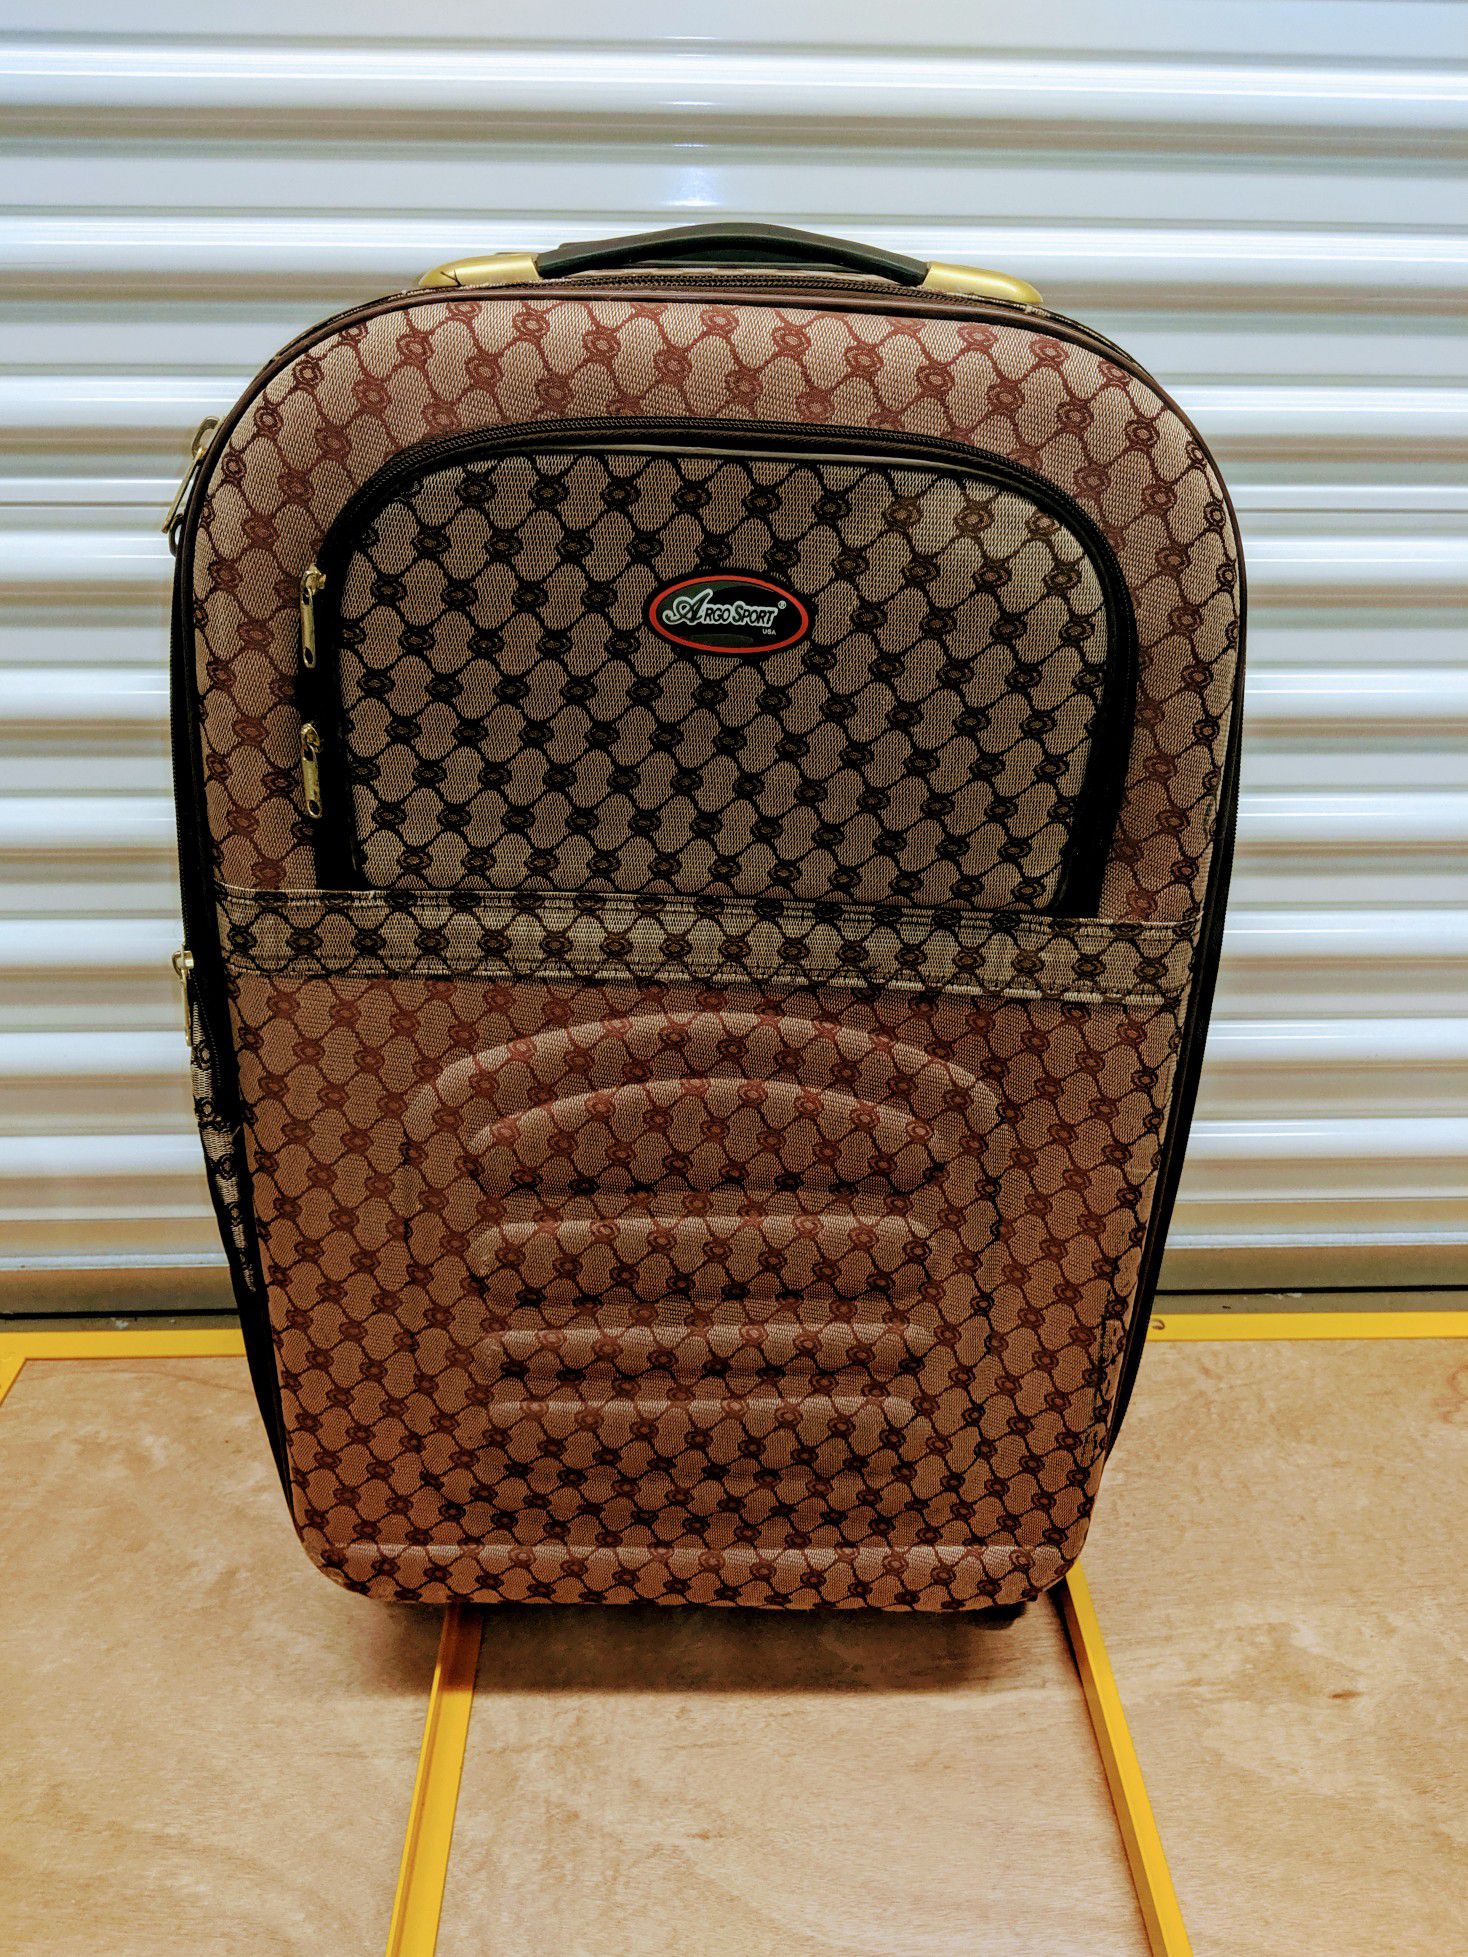 Argo Sport Suitcase (24" tall x 16" wide)